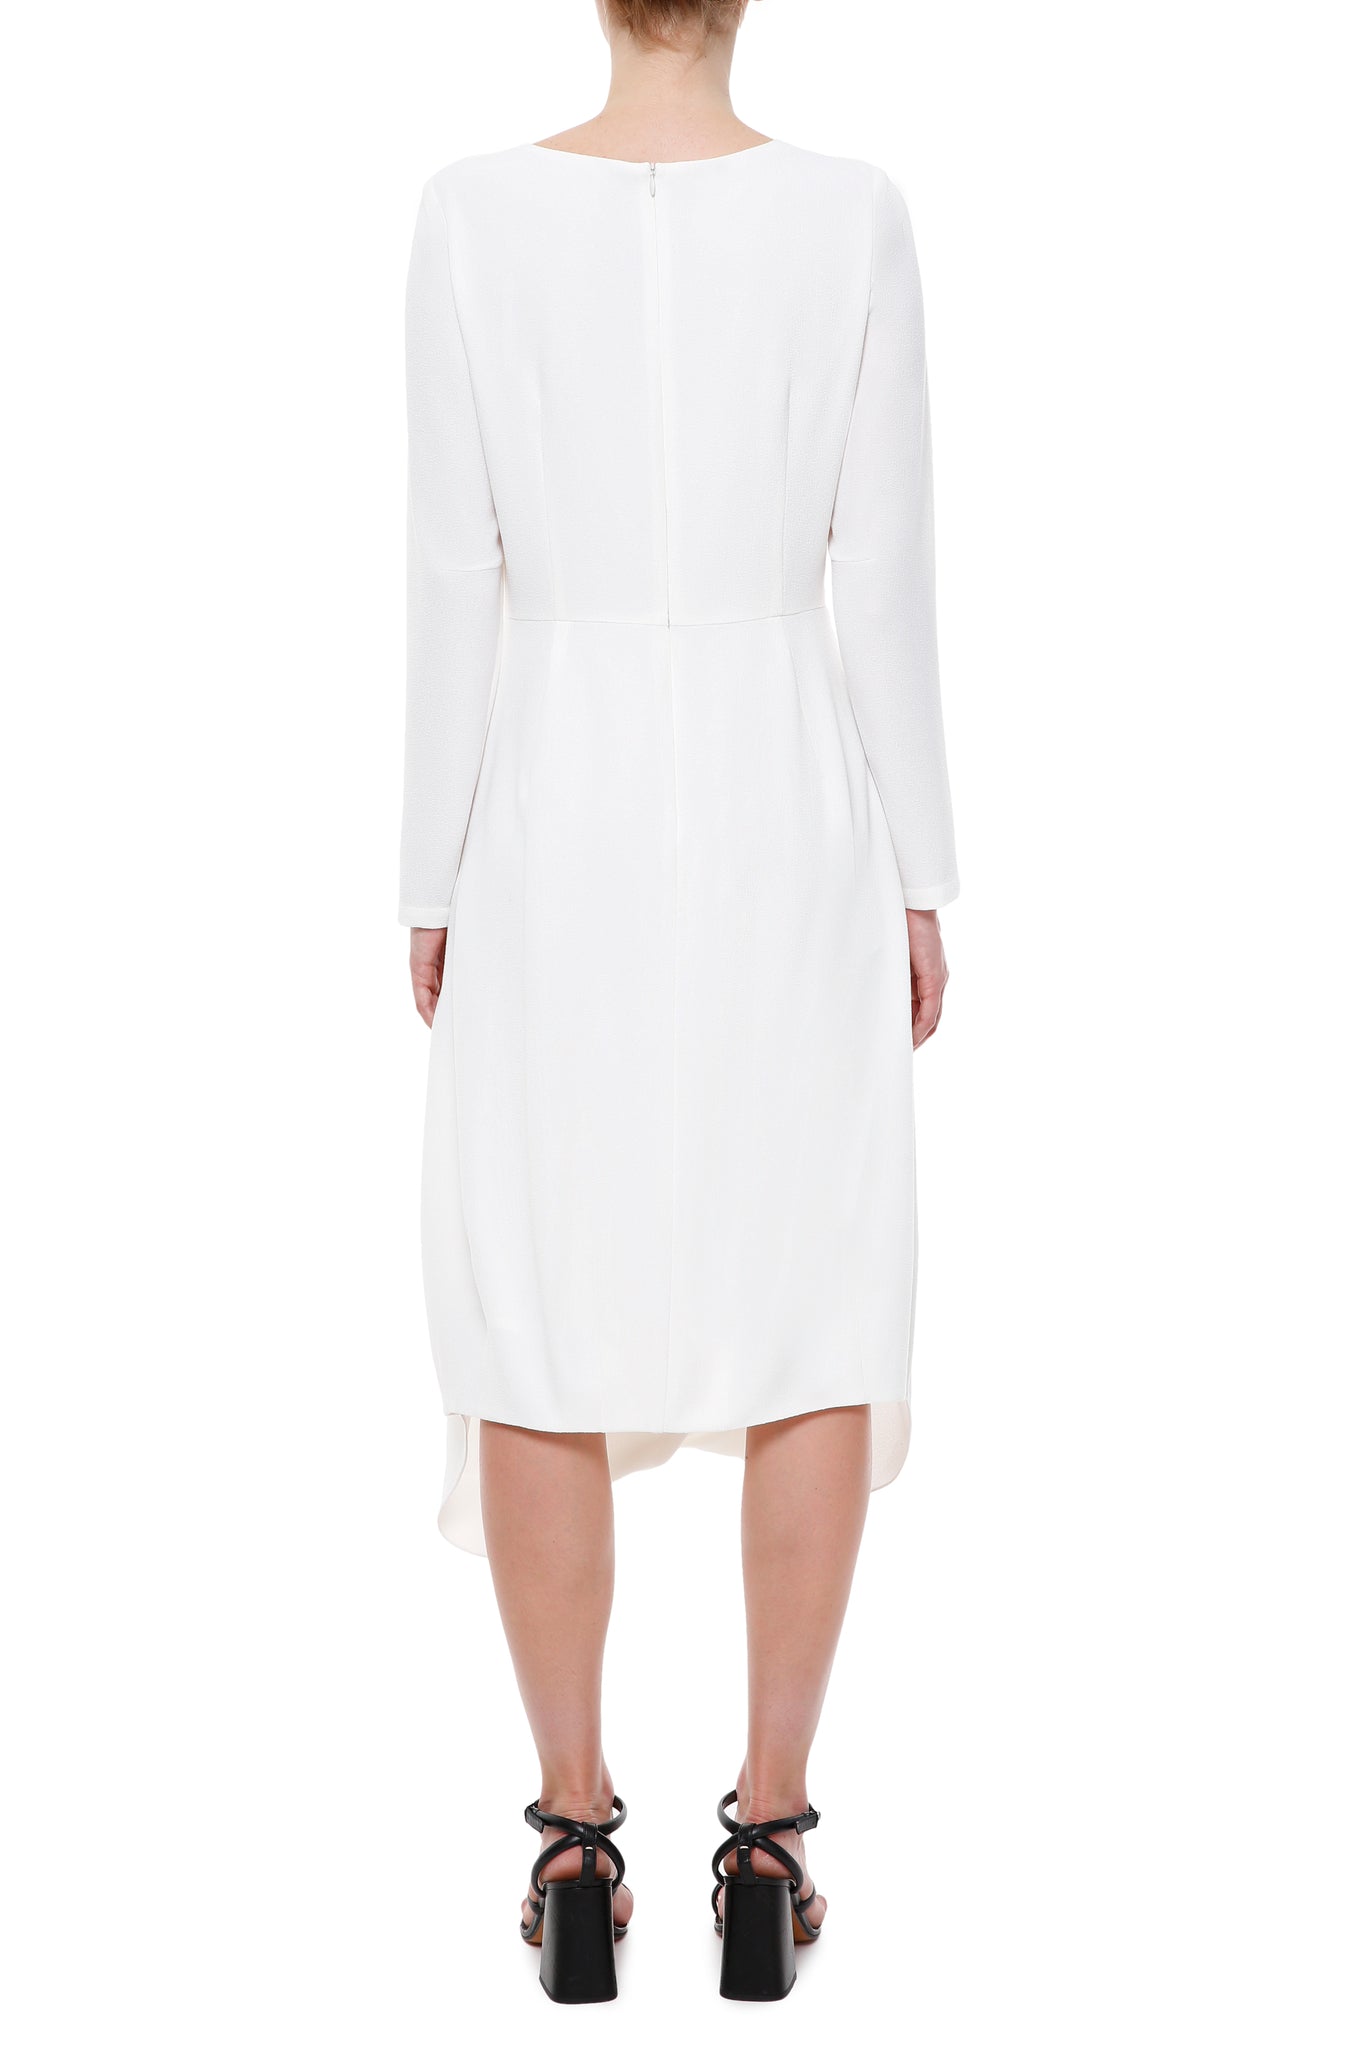 Біла сукня міді